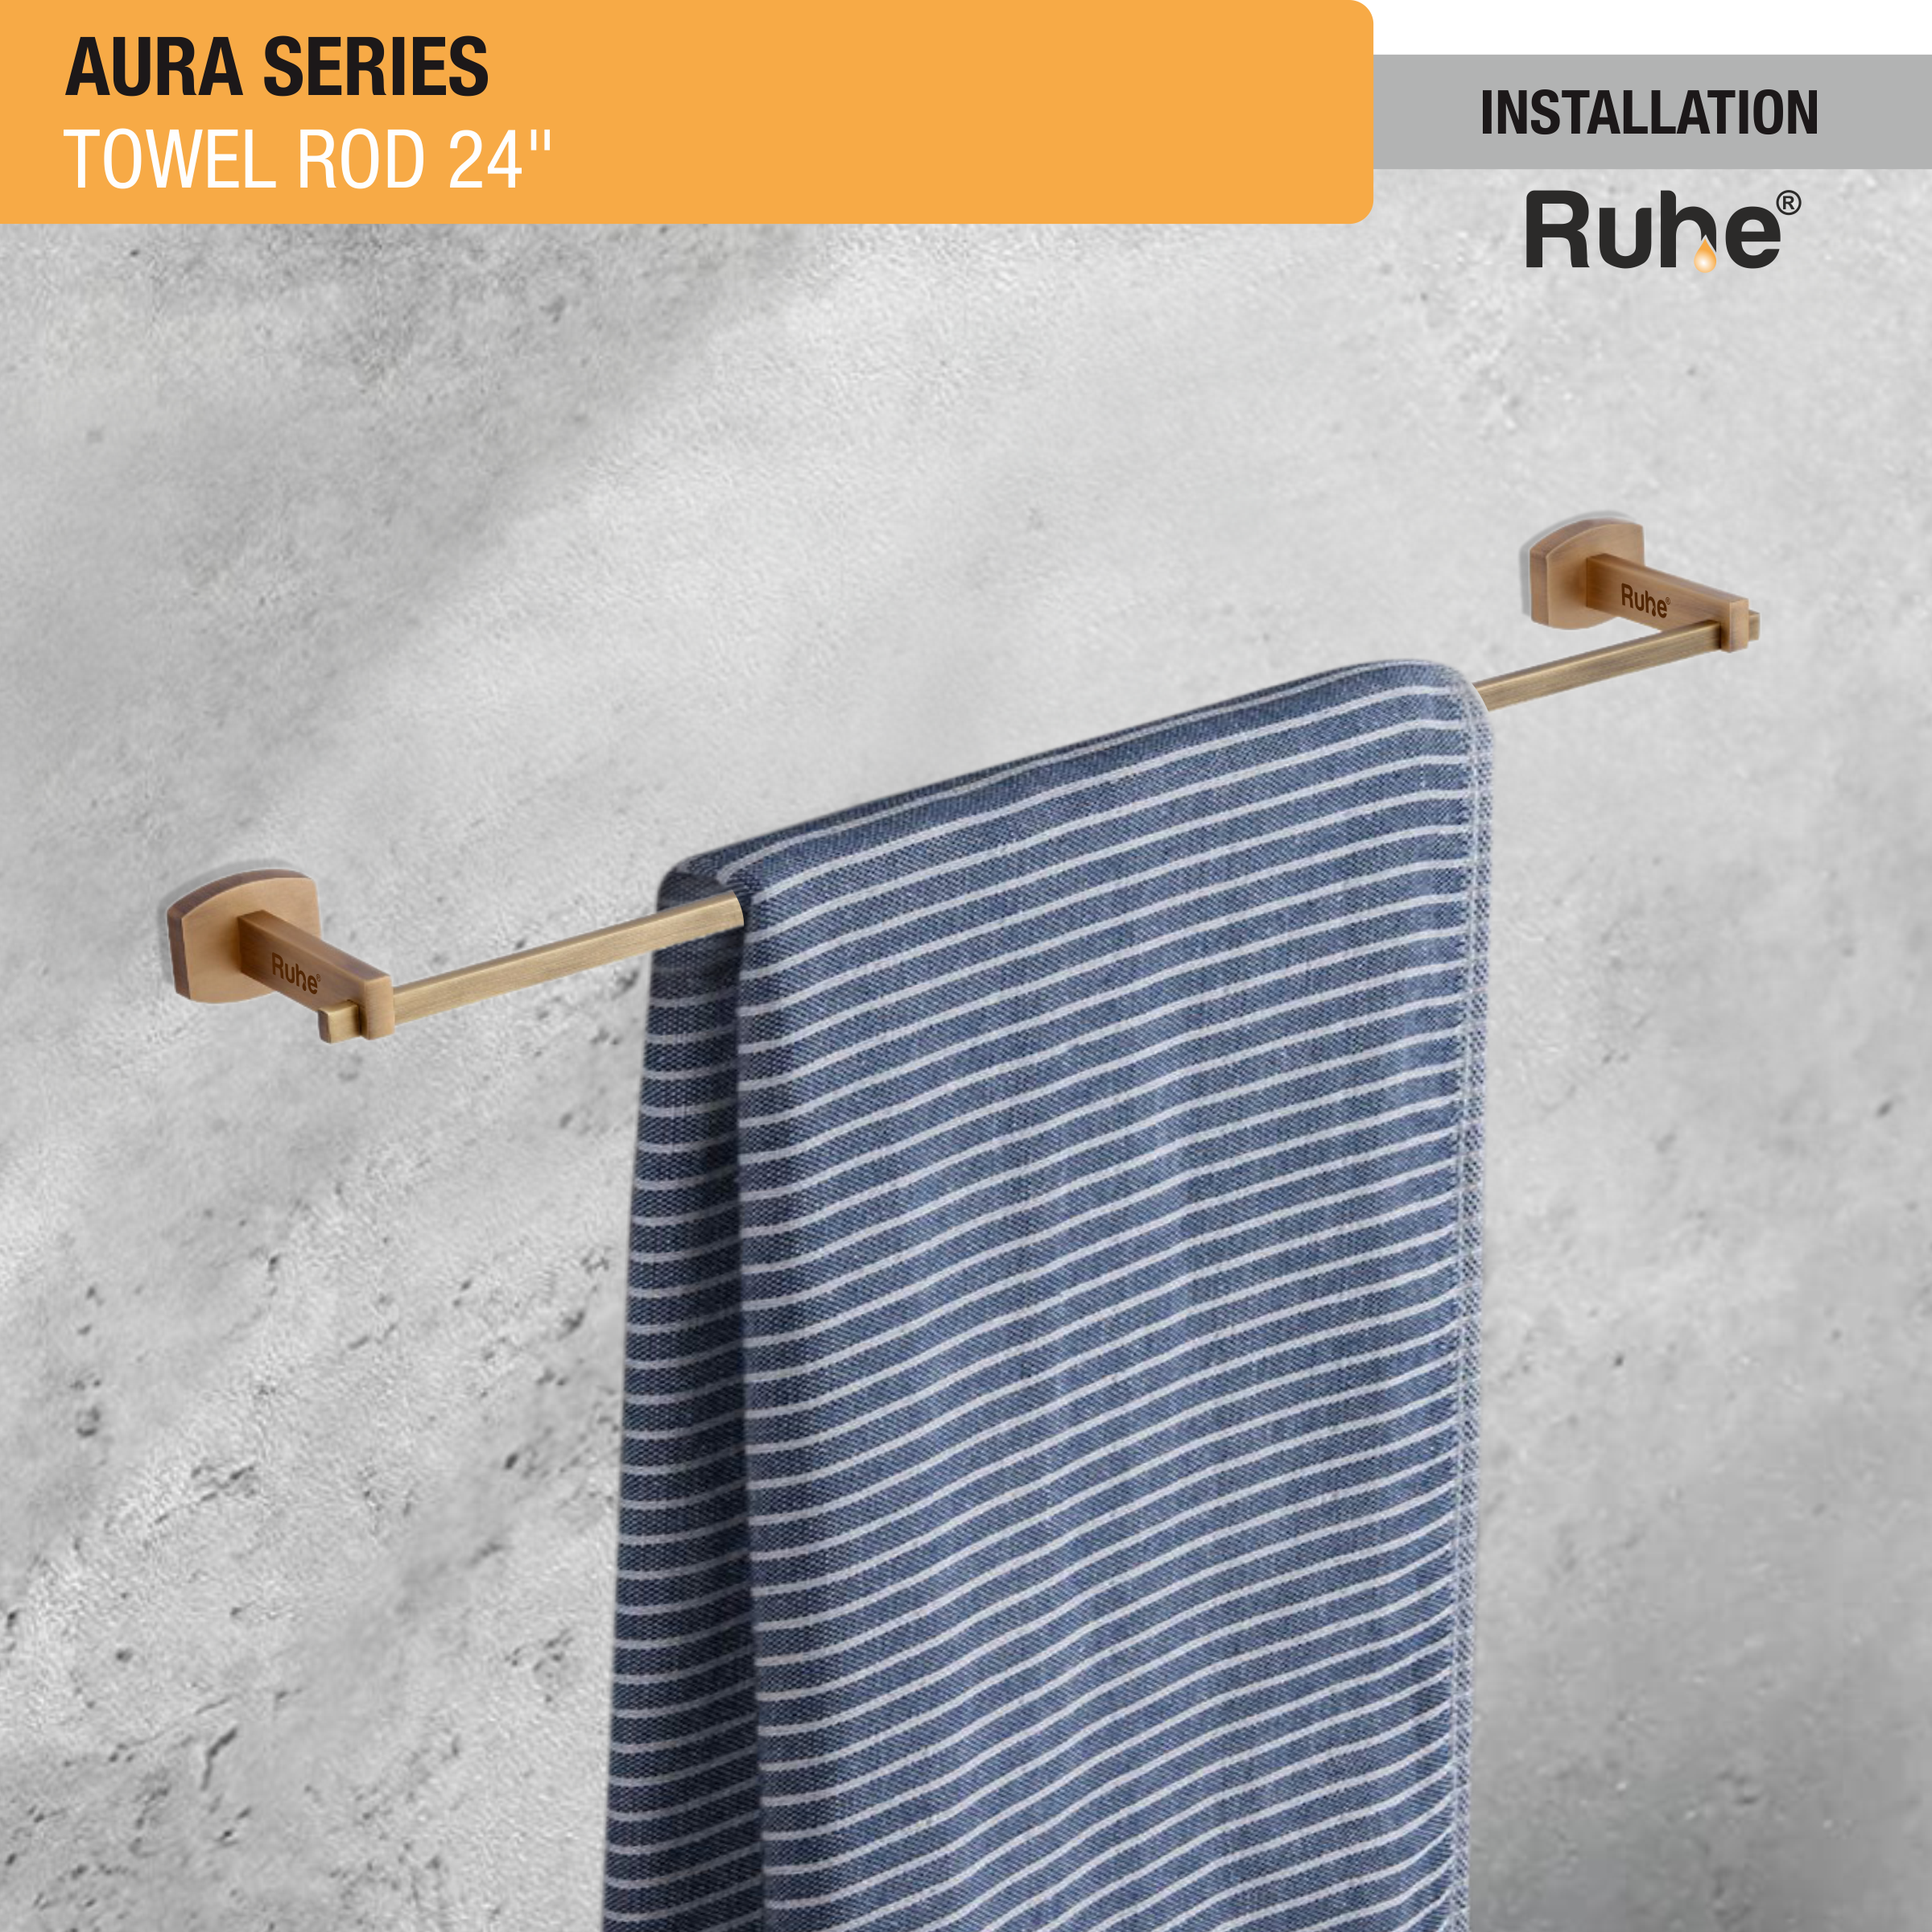 Aura Brass Towel Rod (24 Inches) installation